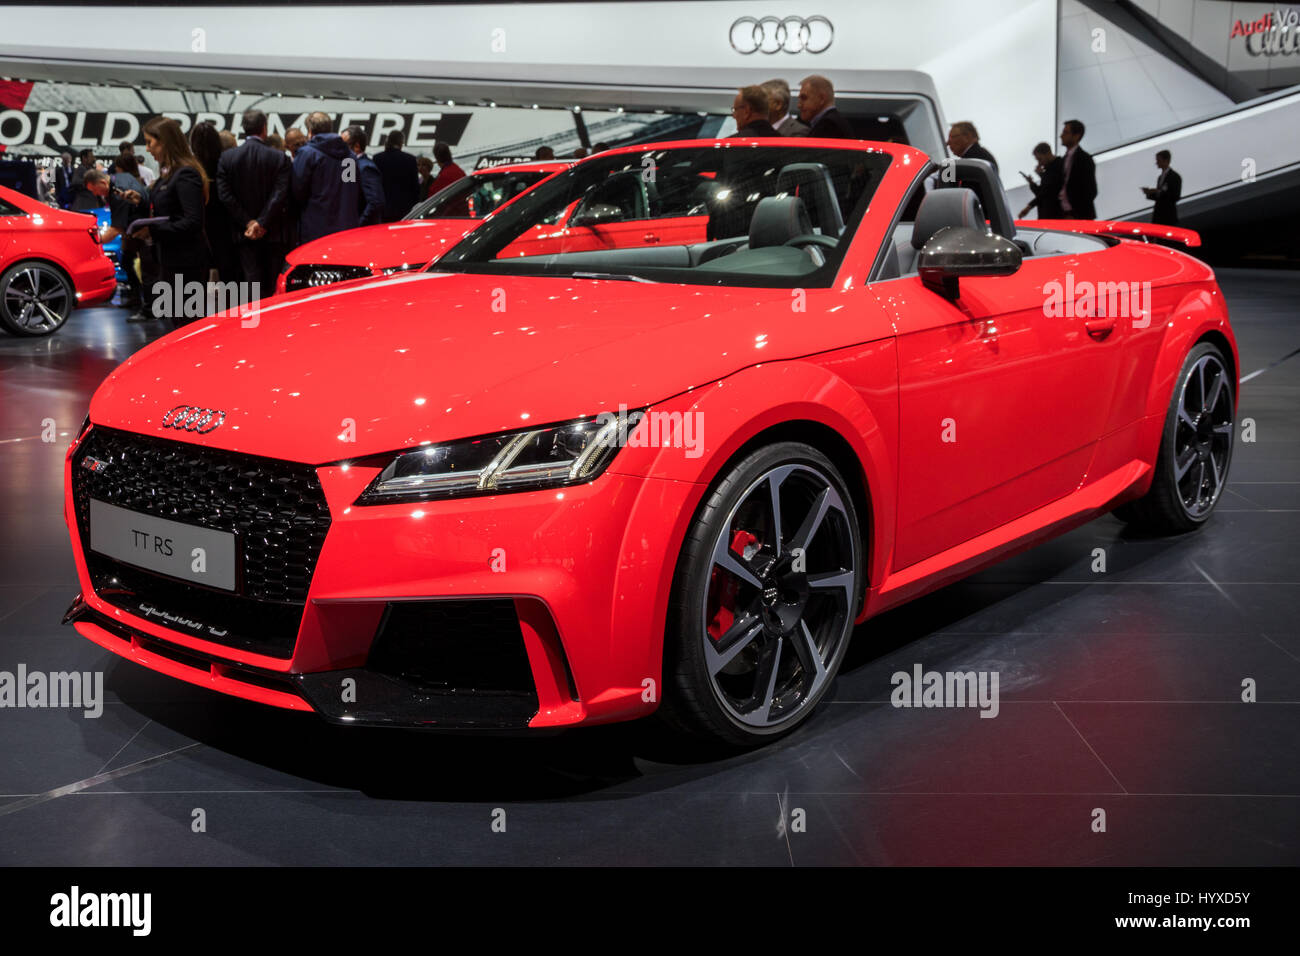 Audi Tt Rs Stockfotos und -bilder Kaufen - Alamy